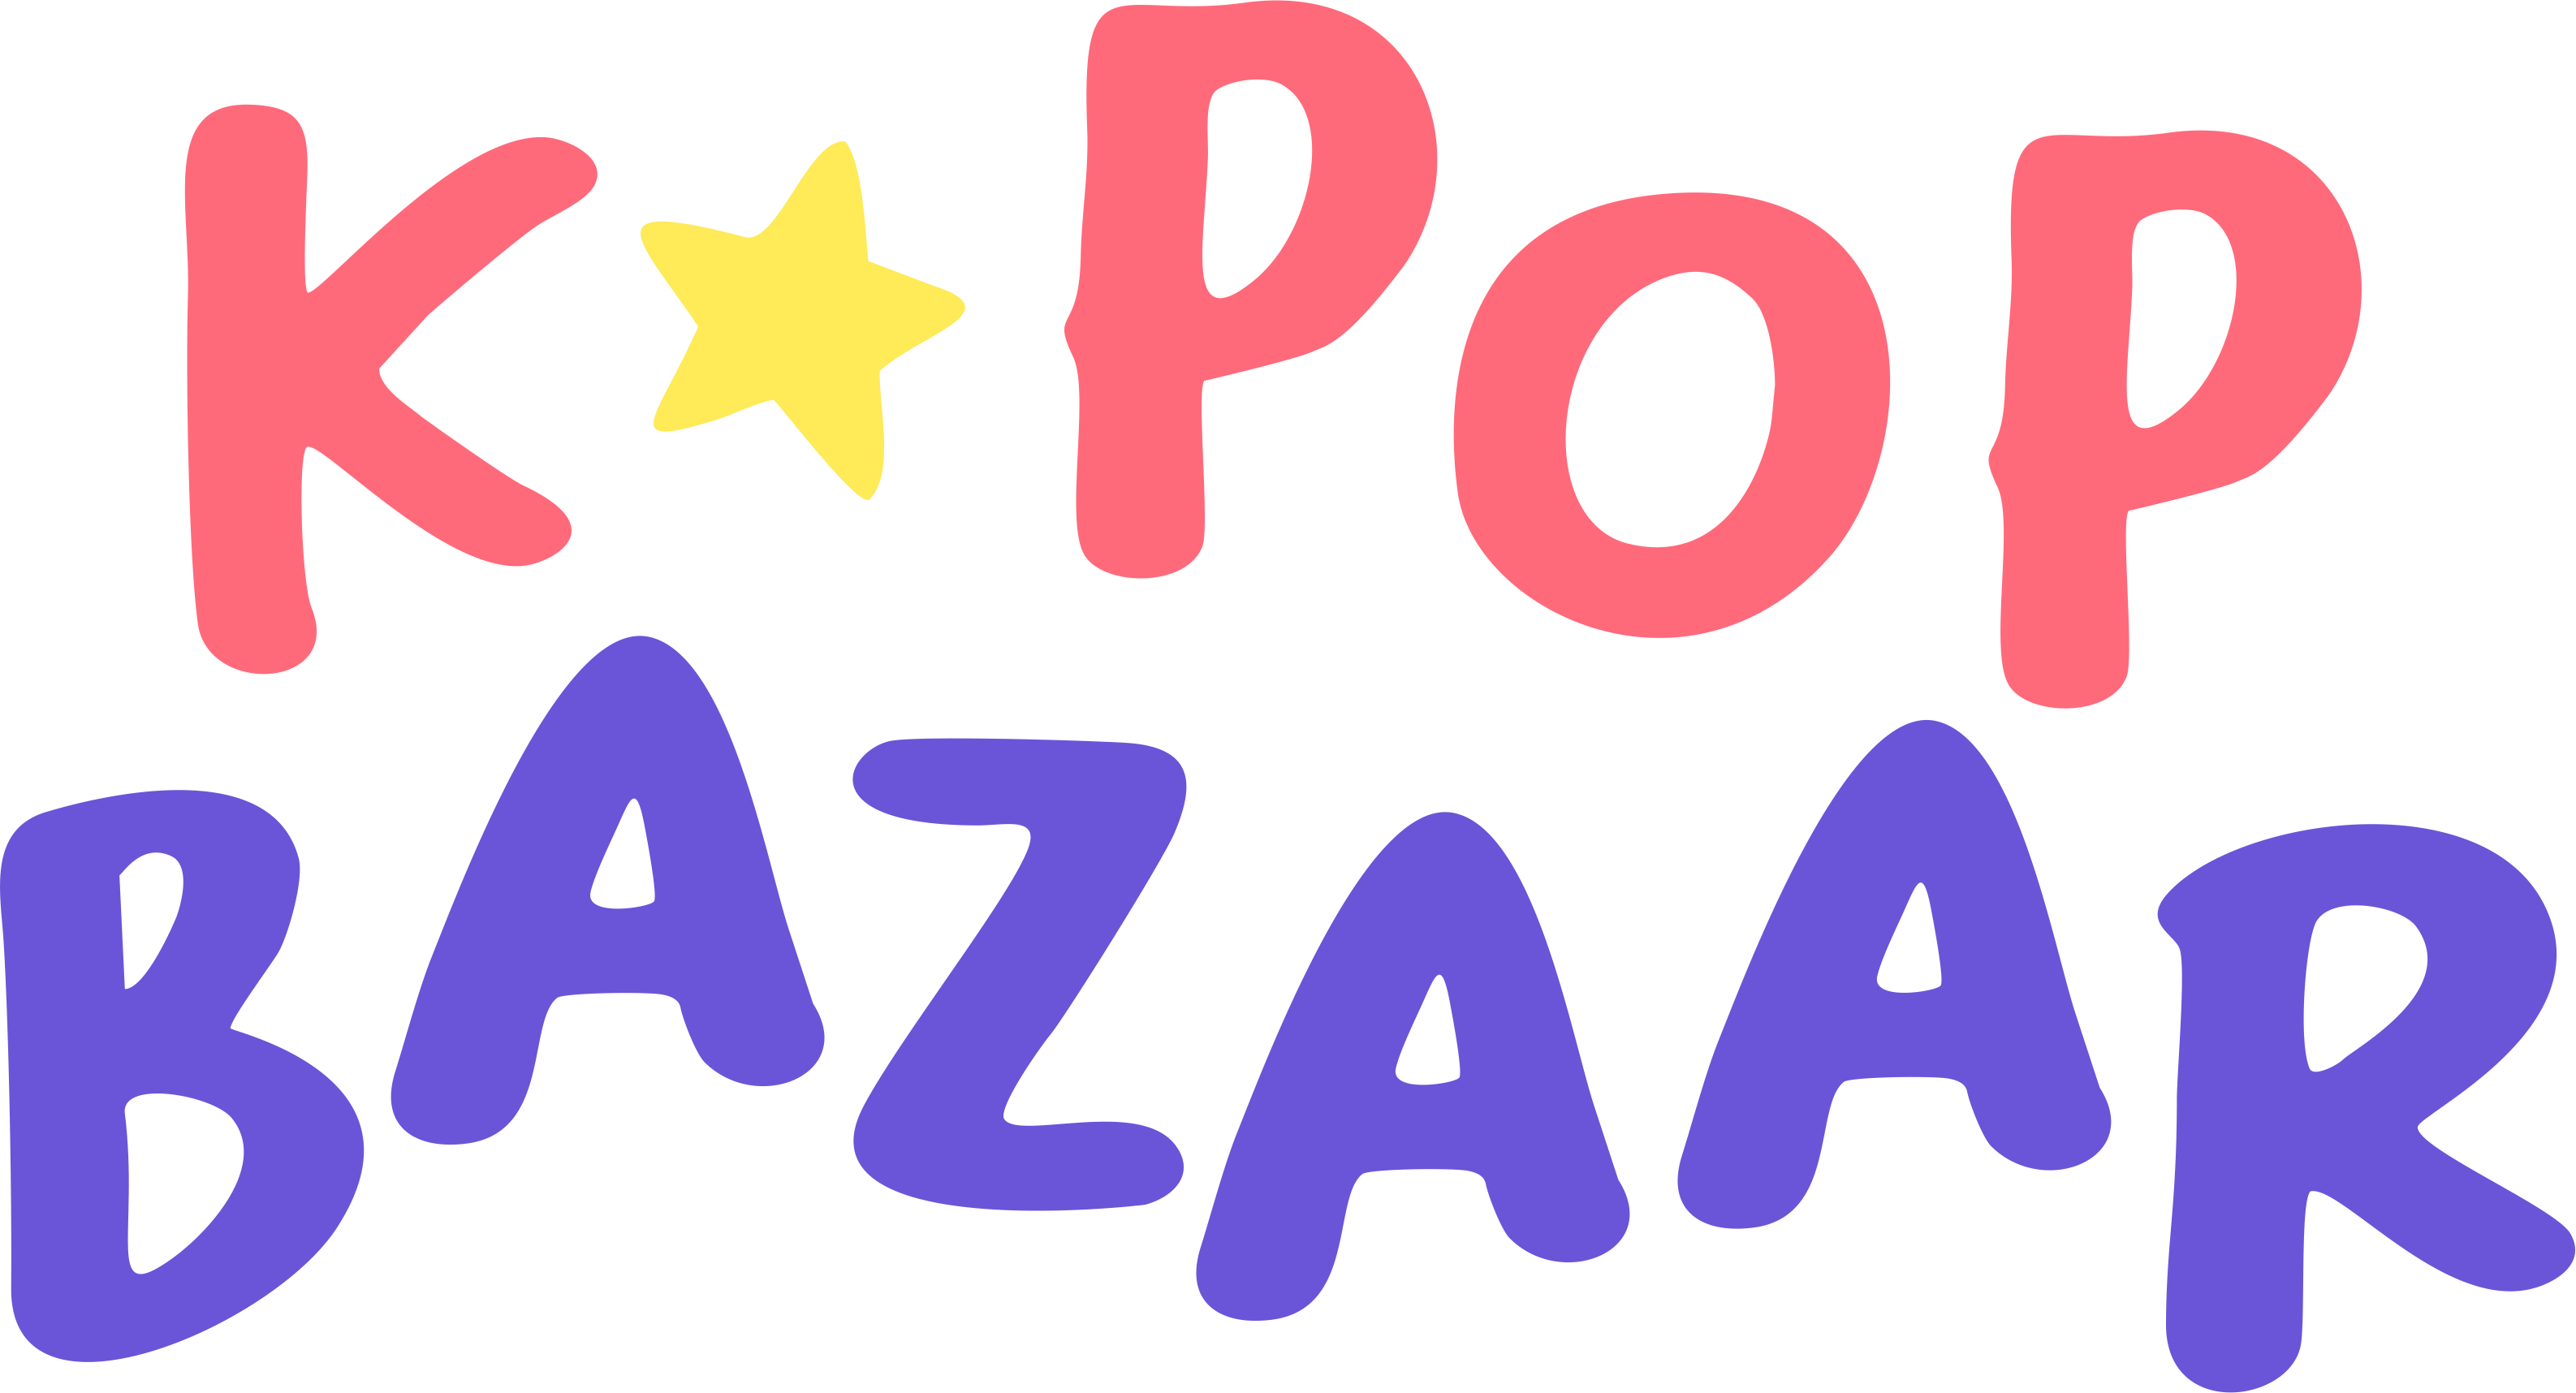 K-POP BAZAAR